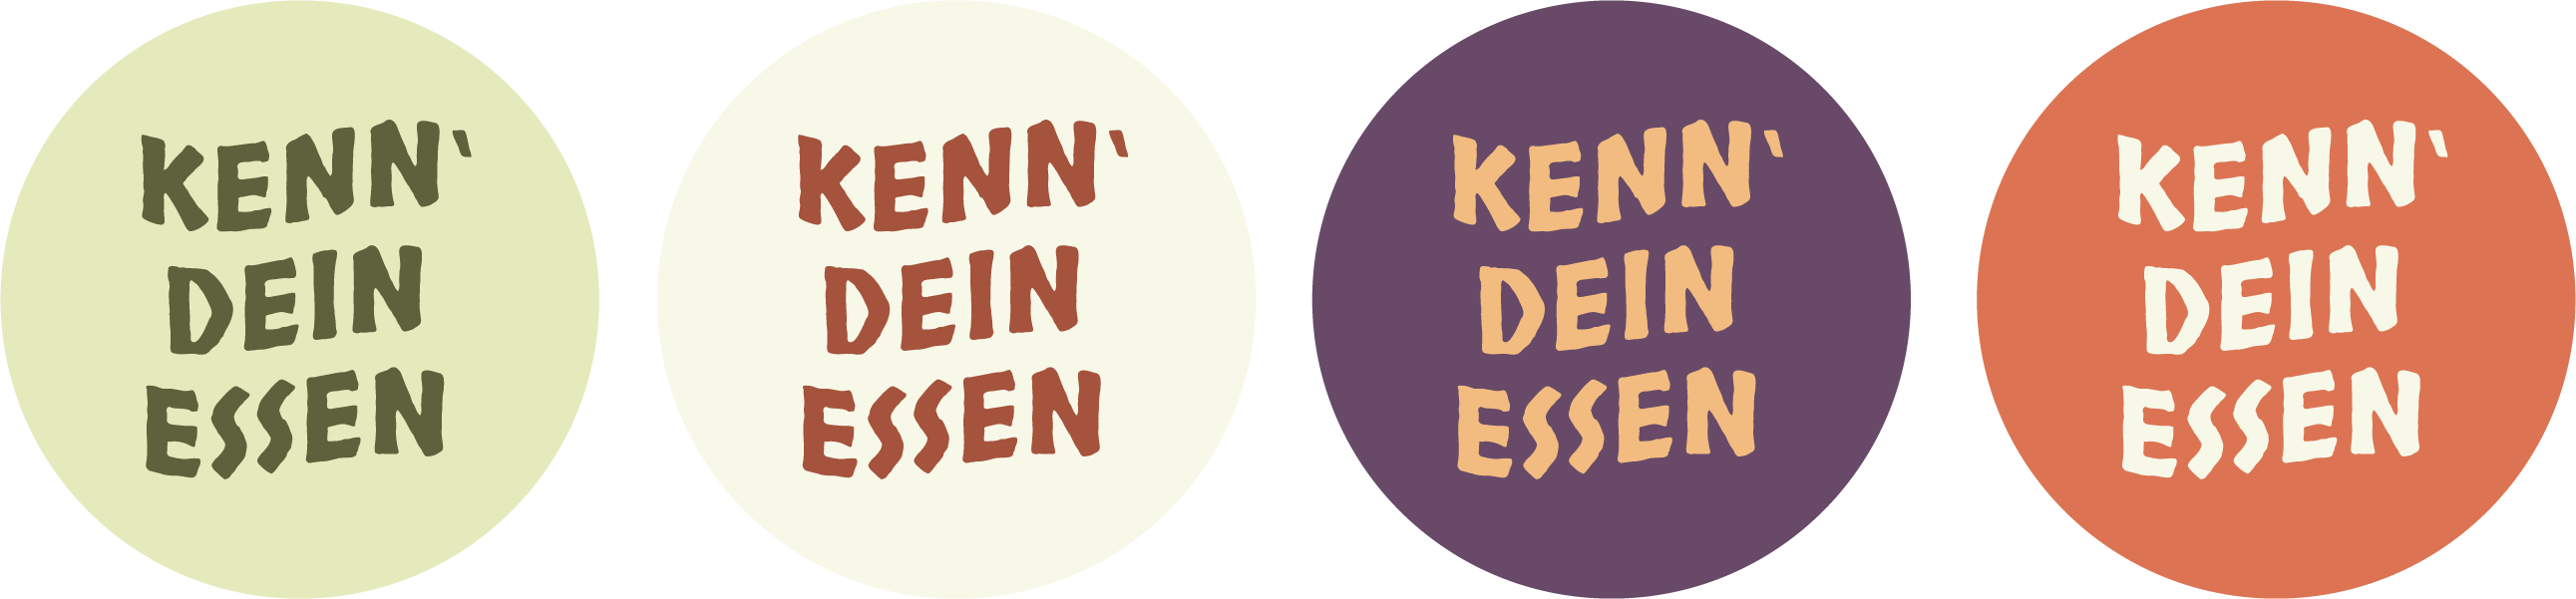 Kenn' dein Essen - Logo Variationen